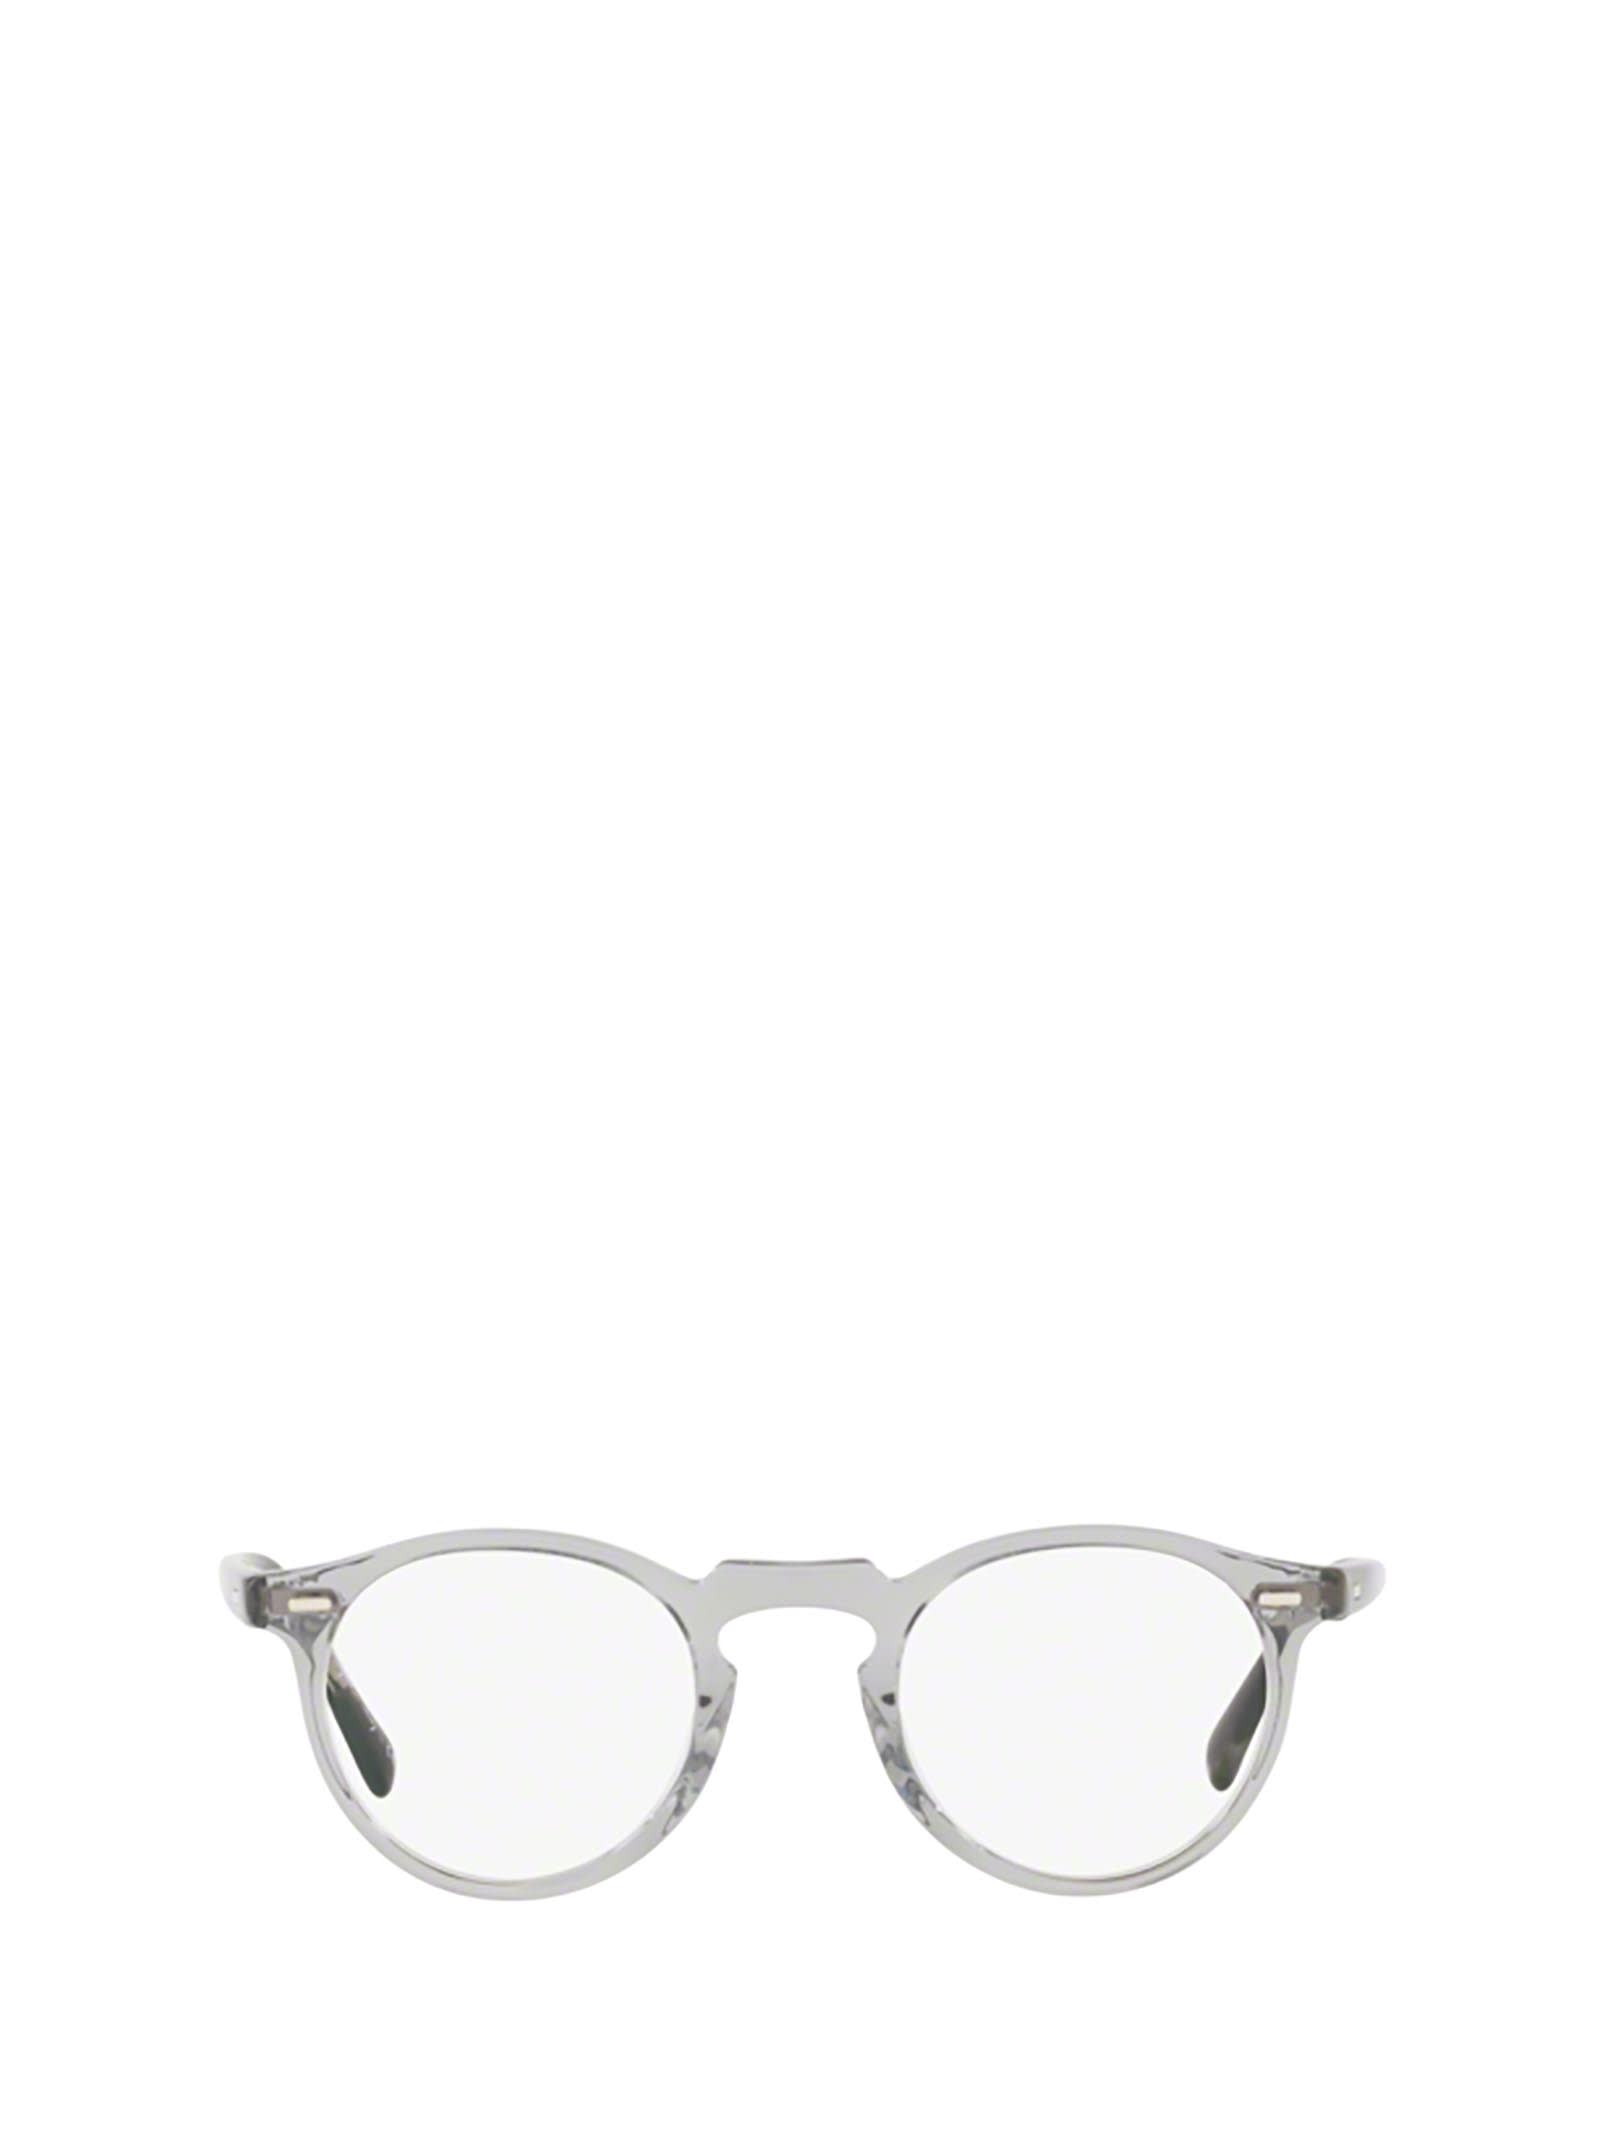 Shop Oliver Peoples Ov5186 Workman Grey Glasses